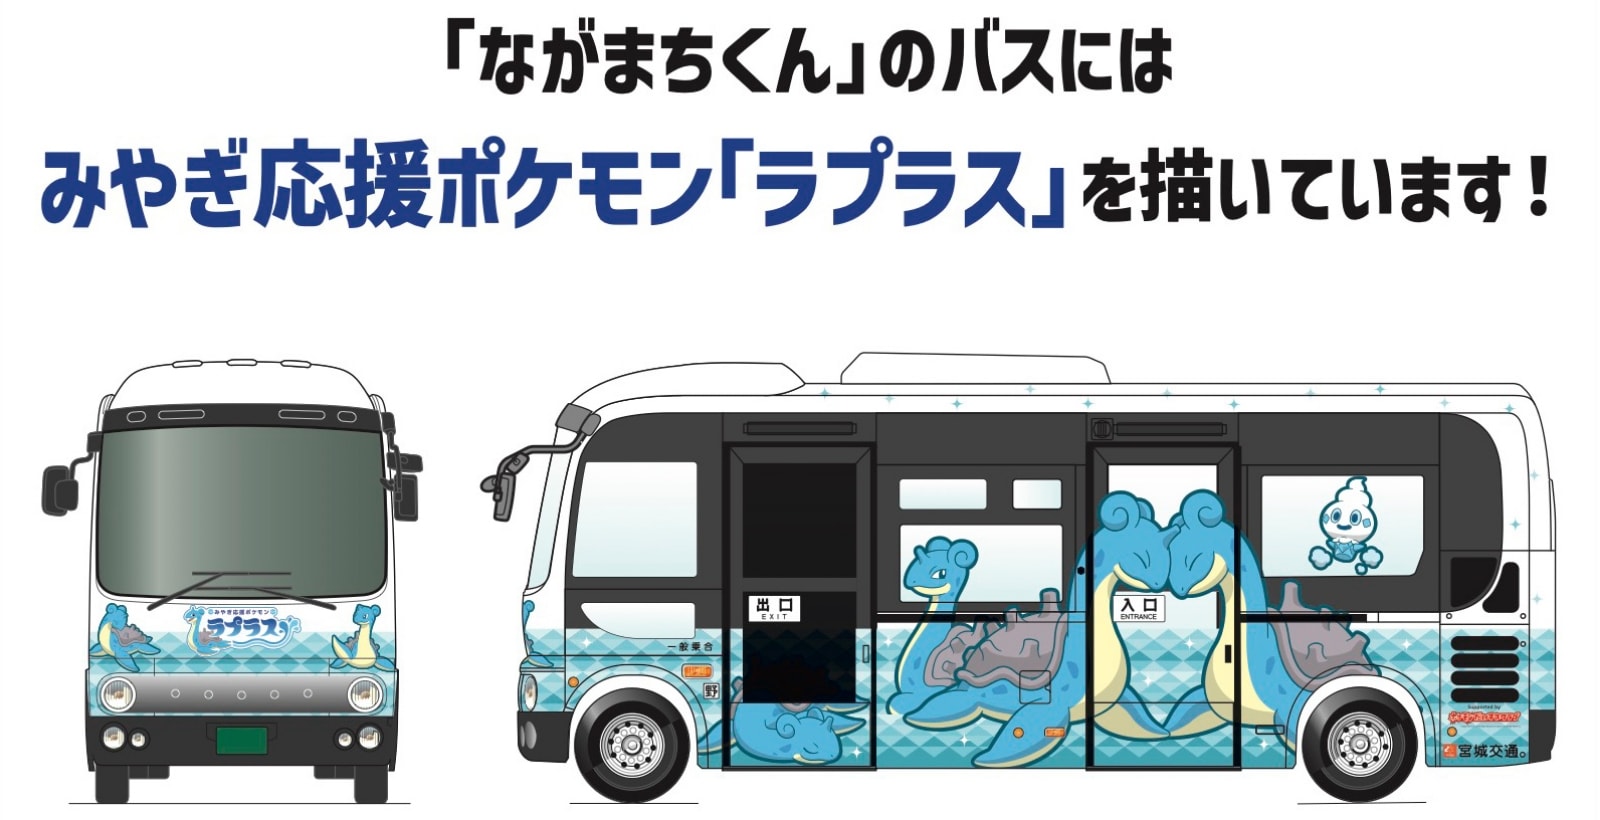 「ながまちくん」のバスにはみやぎ応援ポケモン「ラプラス」を描いています！